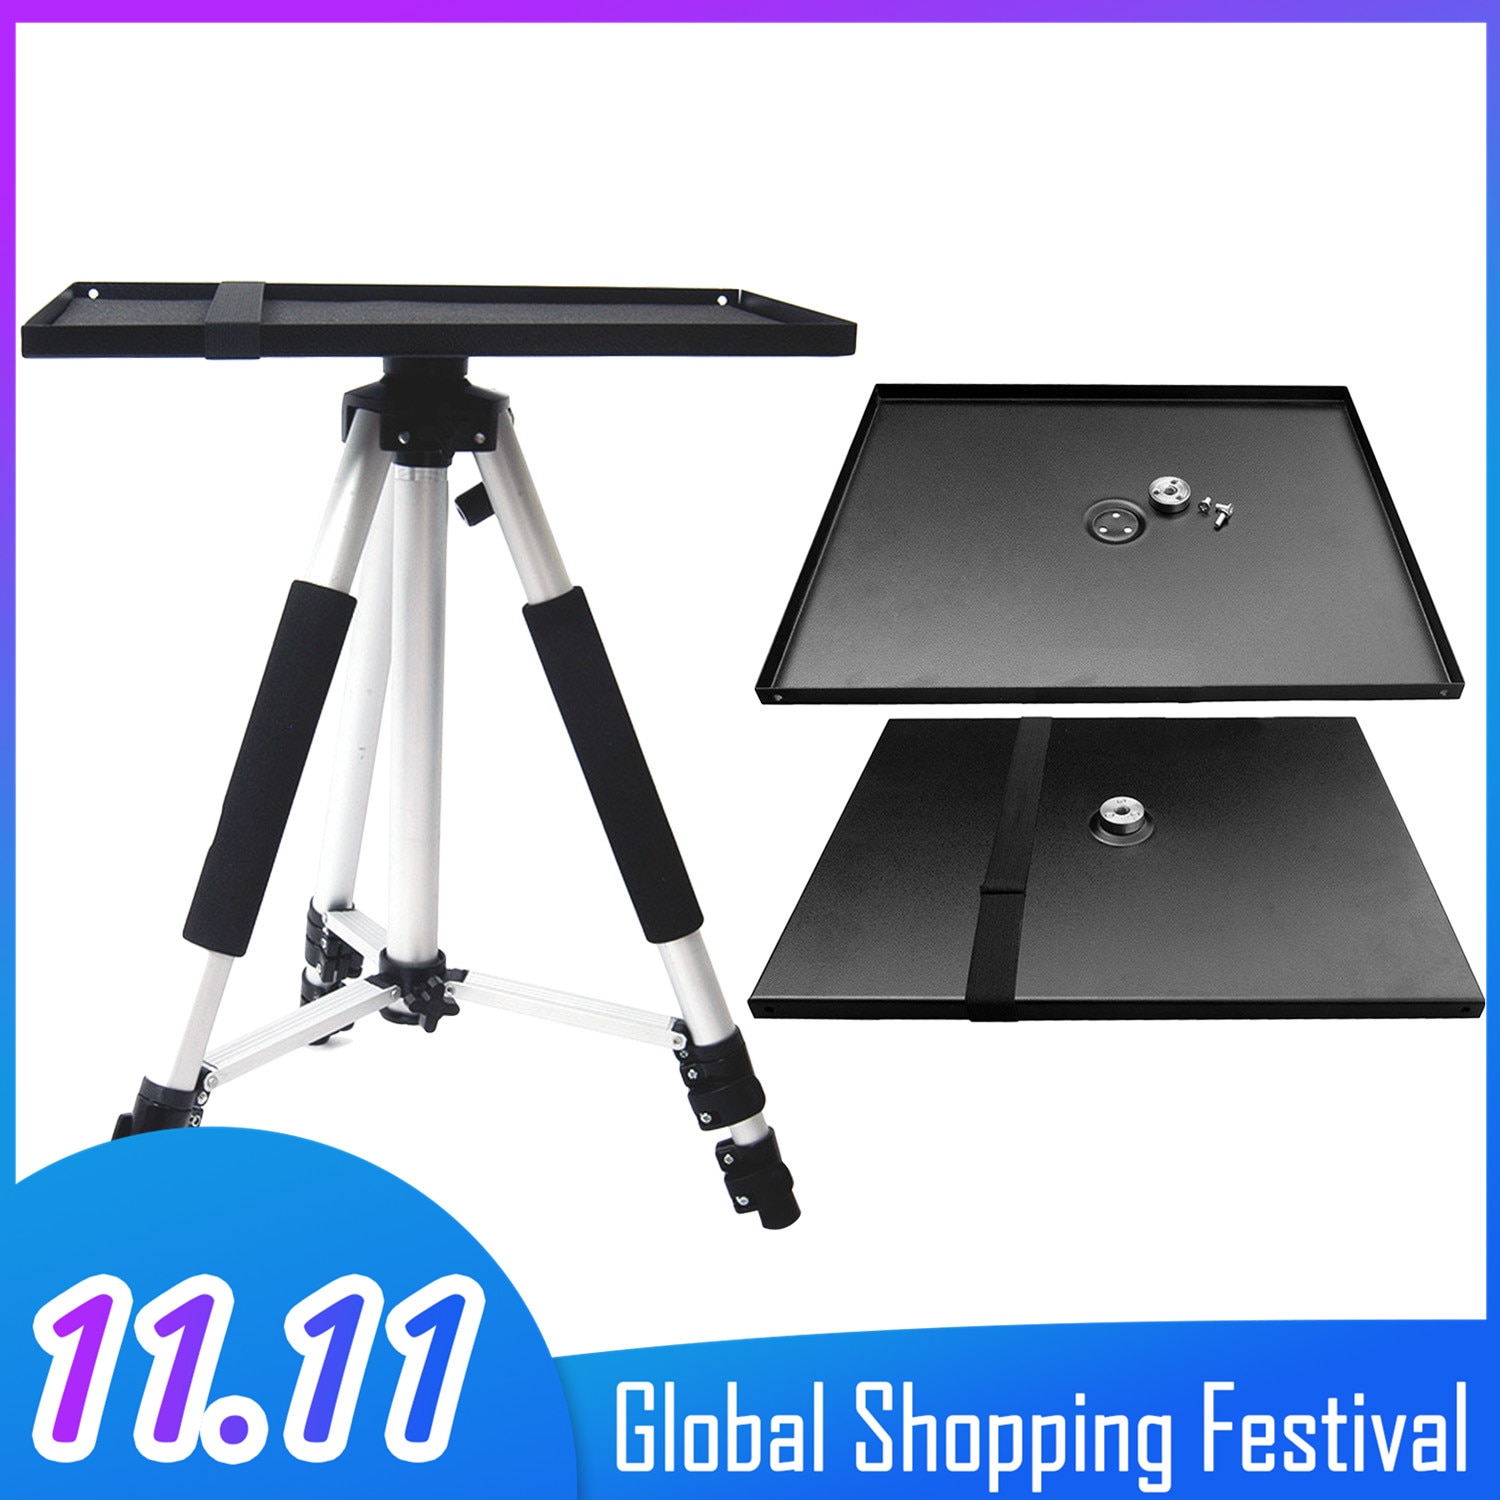 Besegad Universal- Metall Tablett Stand Platte Plattform Halfter Halterung für 3/8 zoll Stativ Projektoren Monitore Laptops